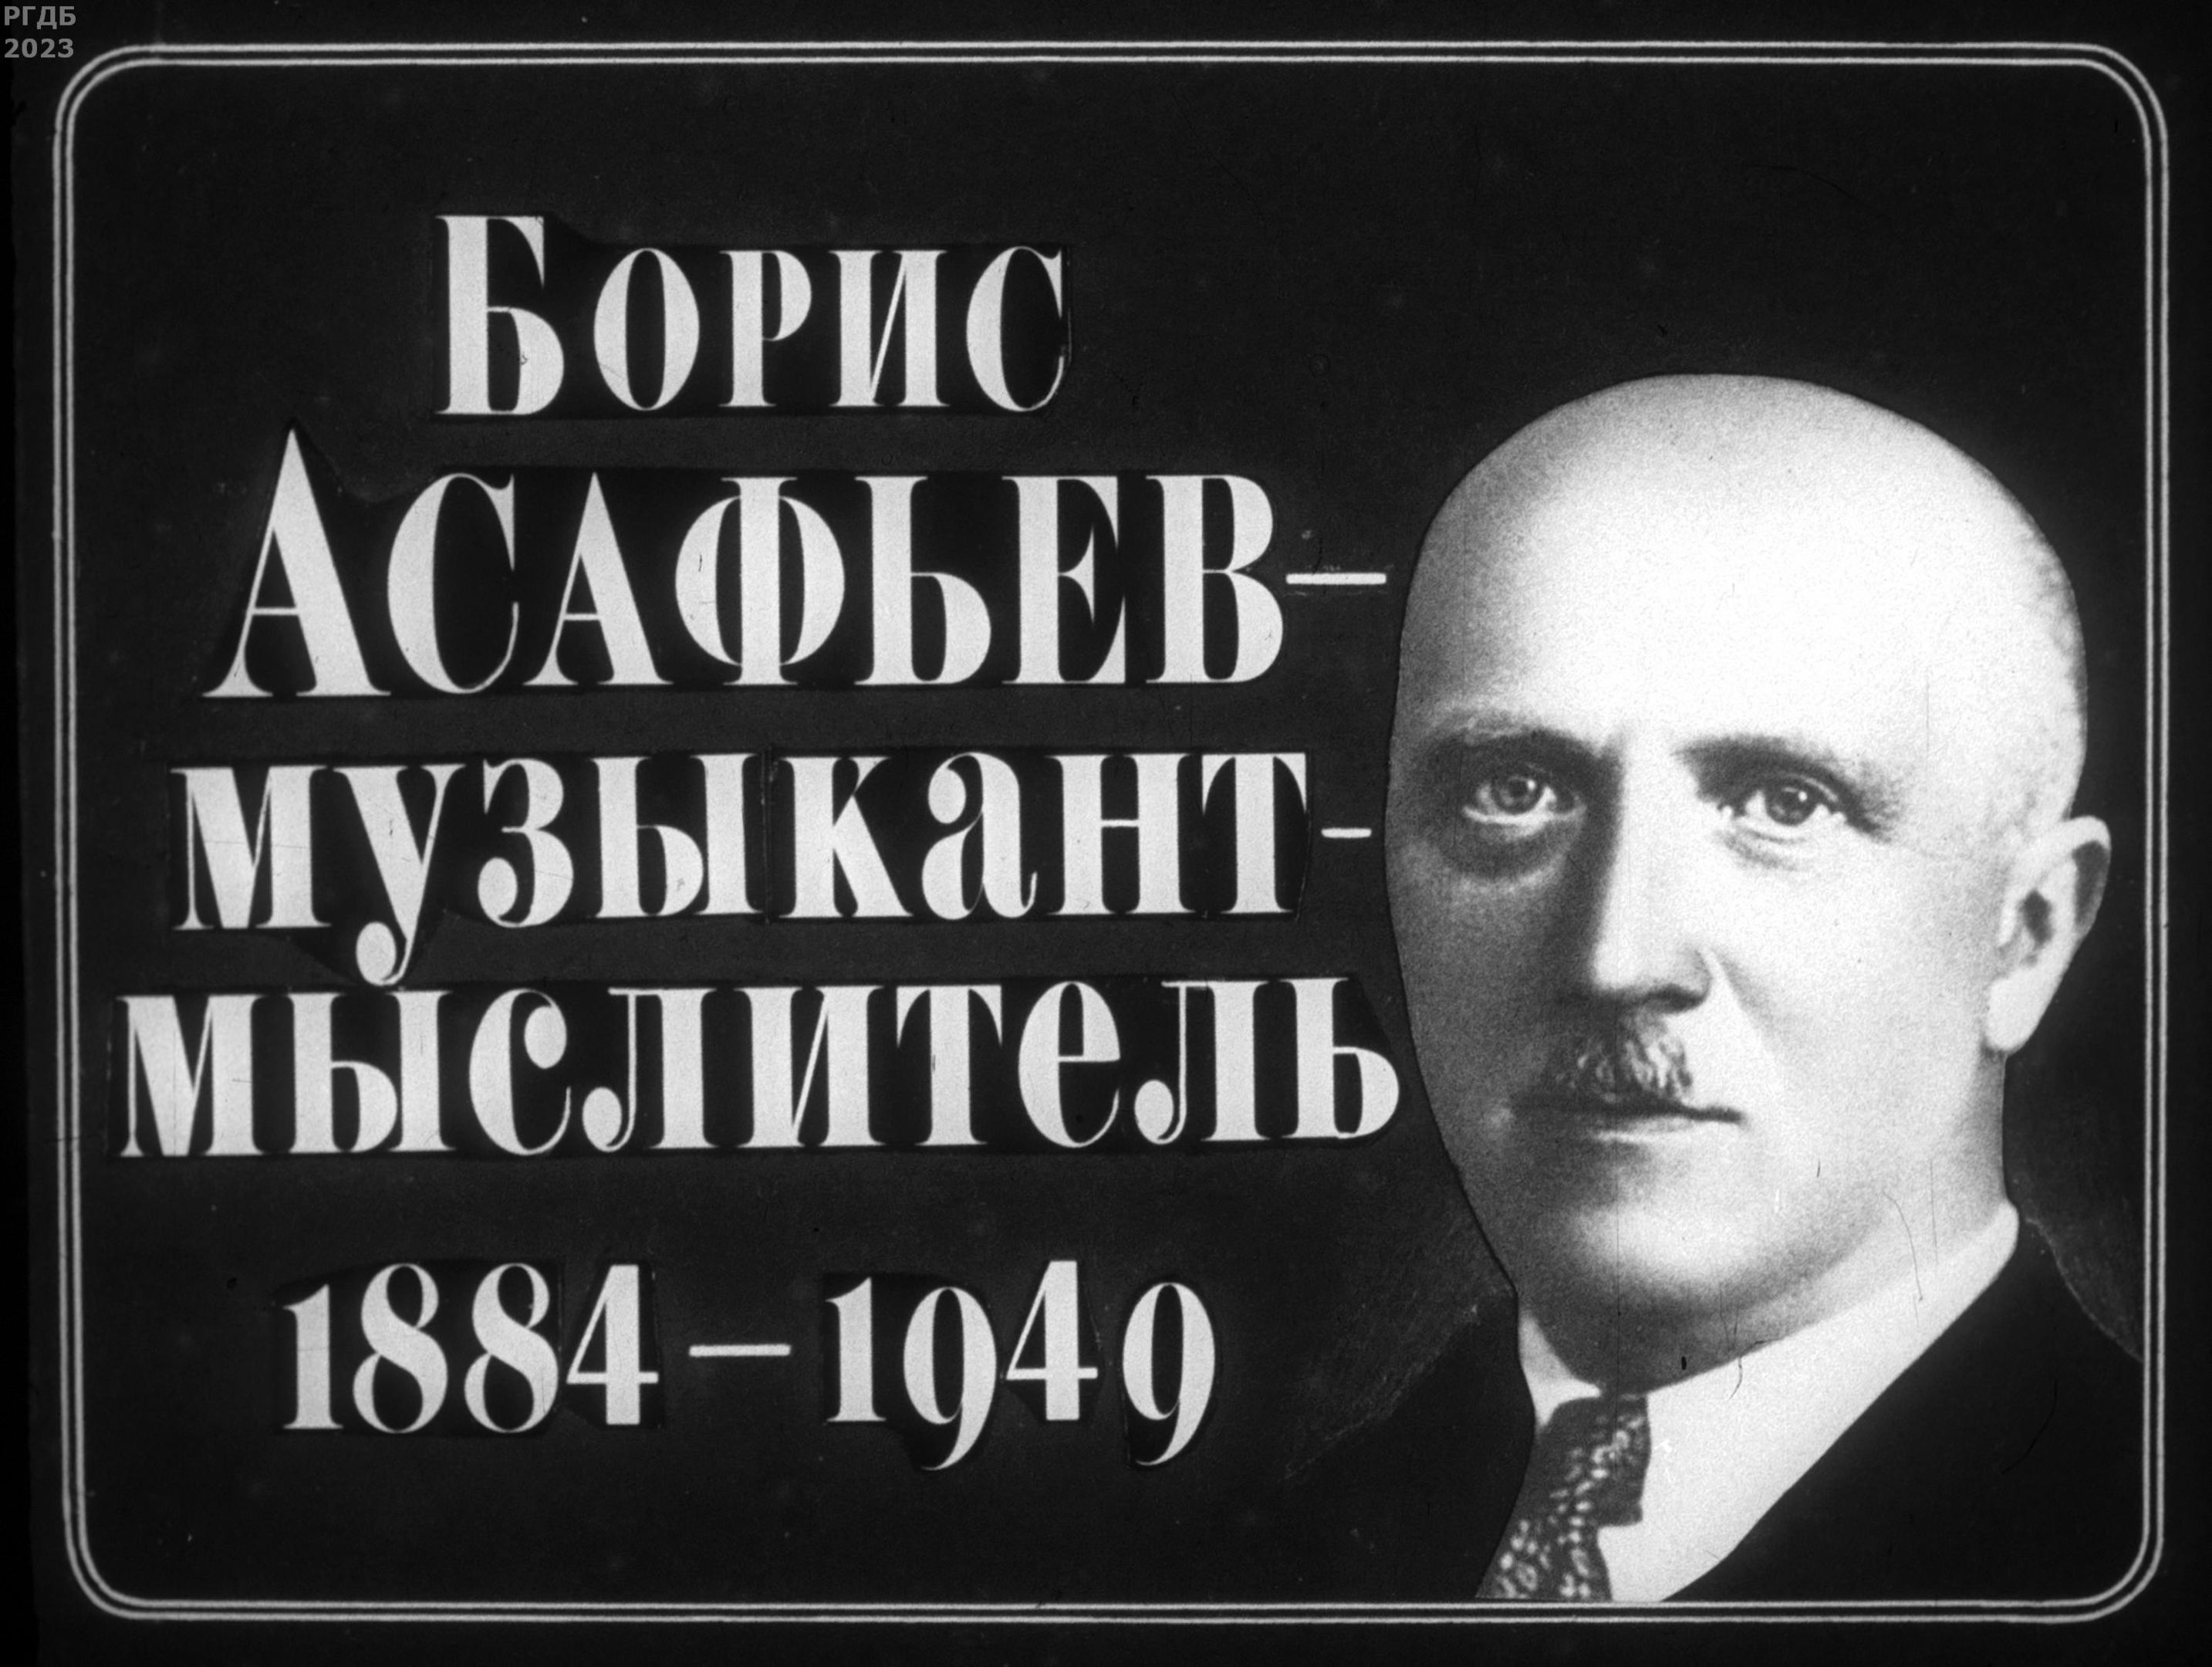 Борис Асафьев - музыкант-мыслитель (1884-1949)